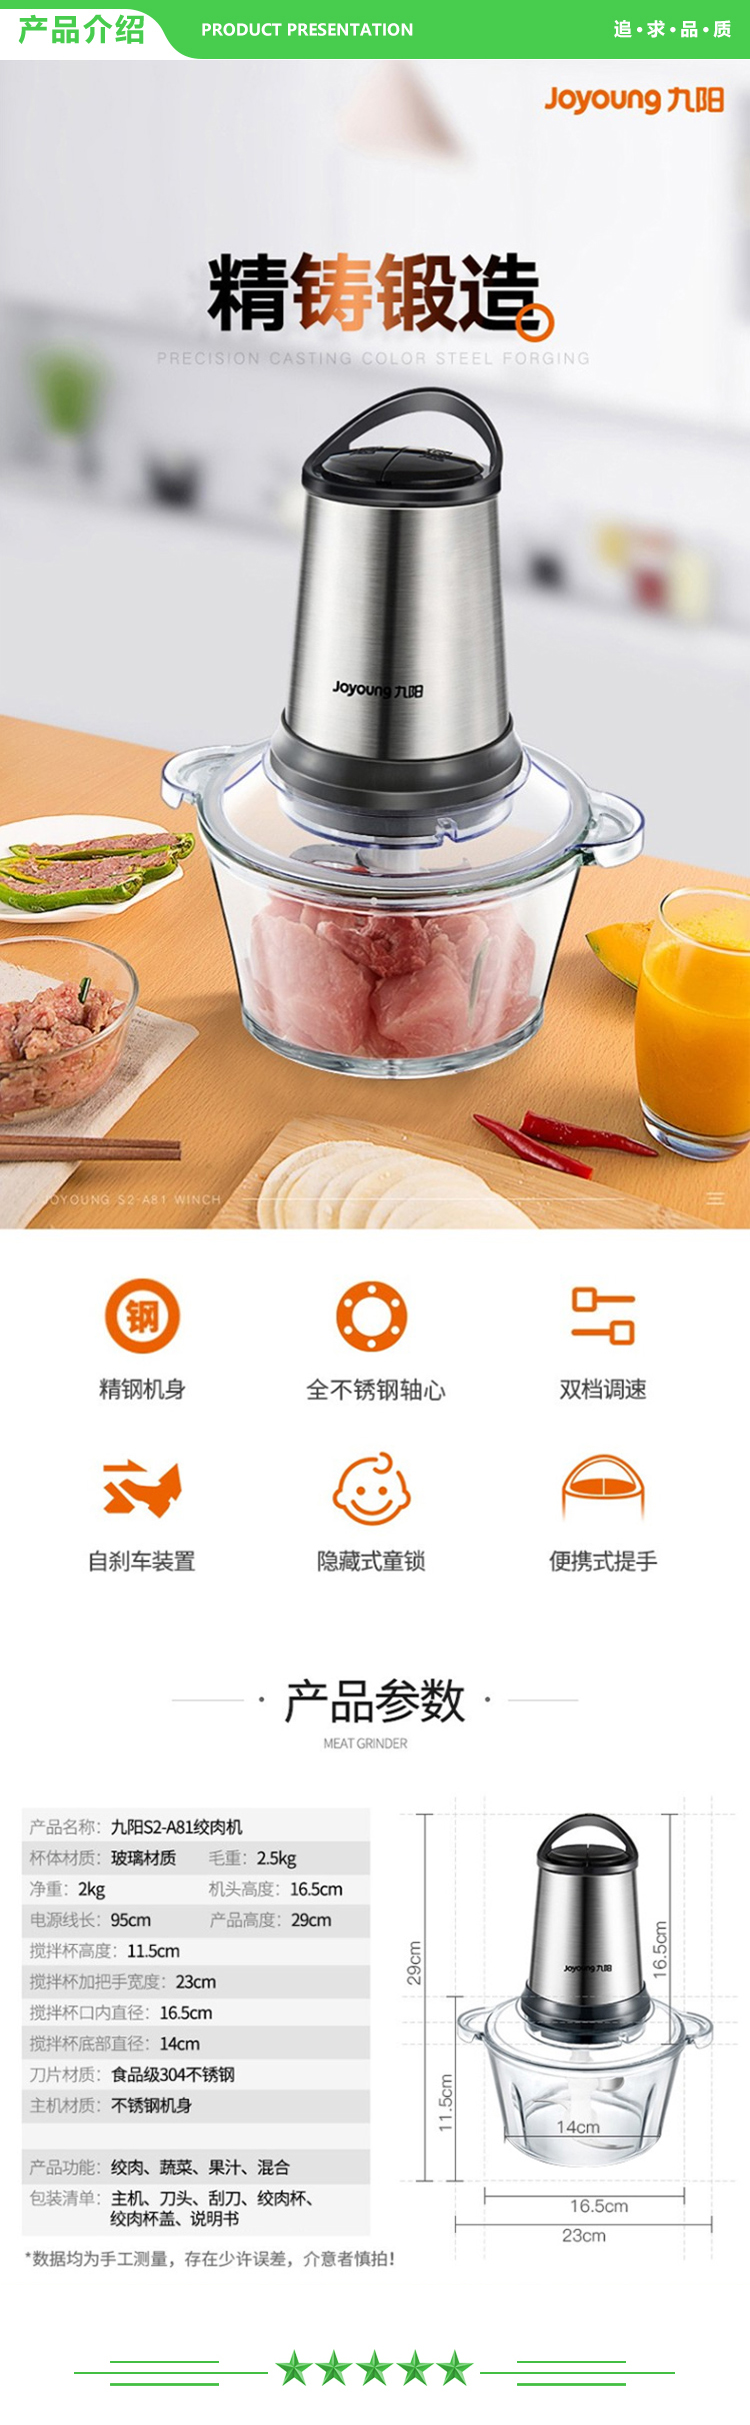 九阳 Joyoung S2-A81 绞肉机 家用多功能电动绞馅自动料理机.jpg